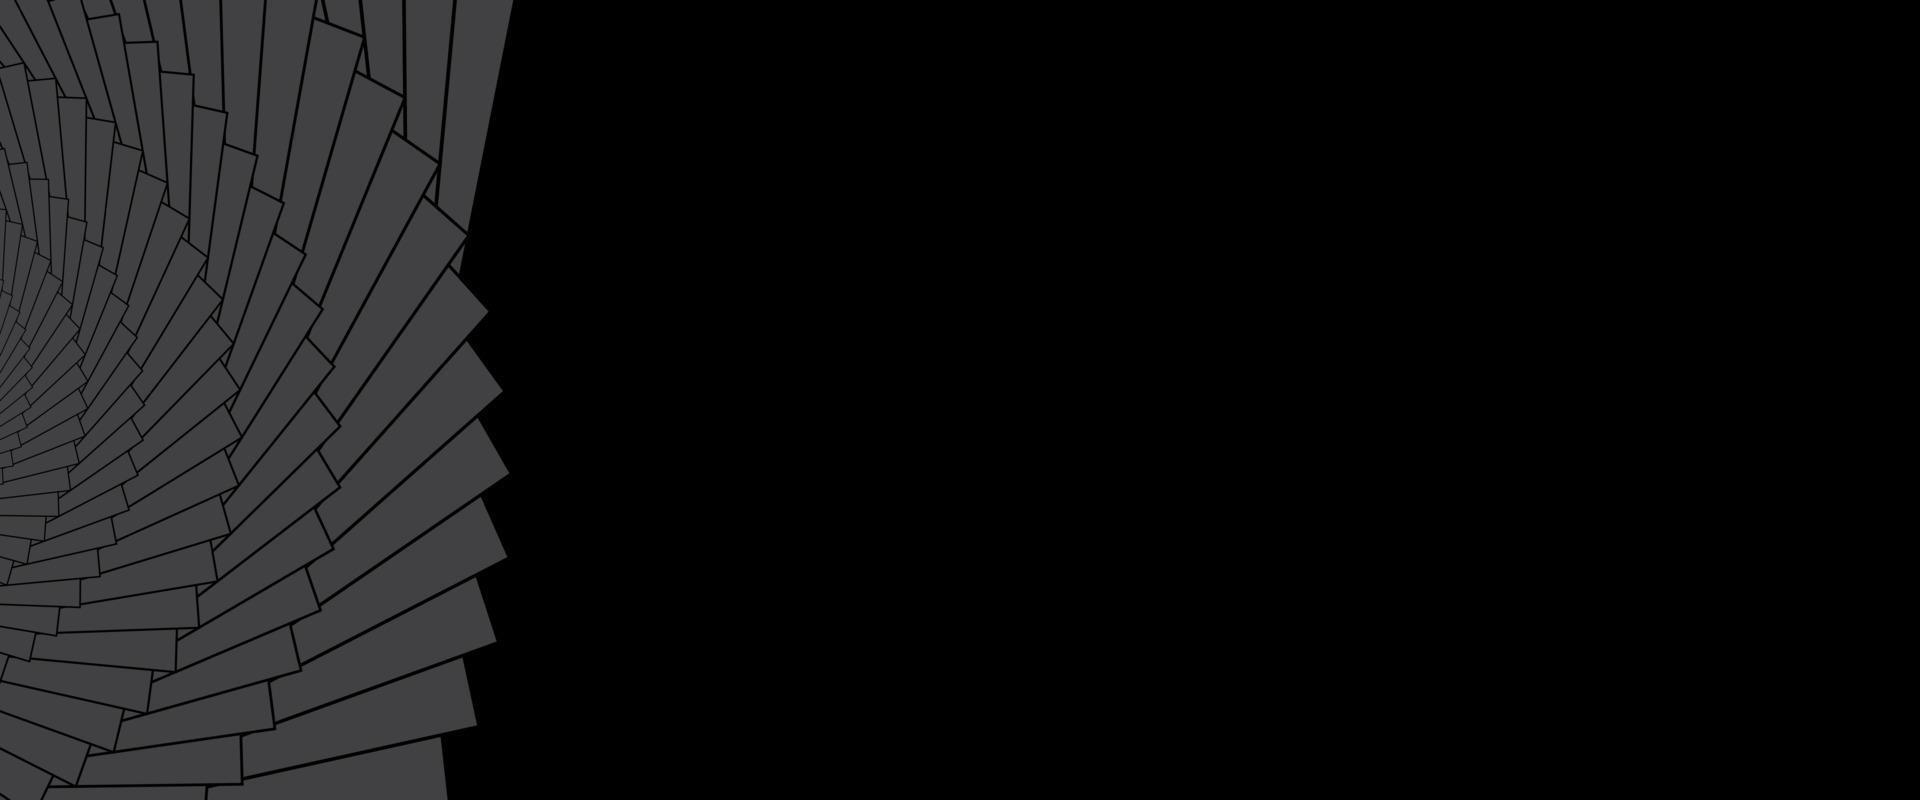 diseño de banner mínimo abstracto con espacio para texto sobre fondo negro. diseño geométrico para el encabezado del sitio web. ilustración vectorial vector